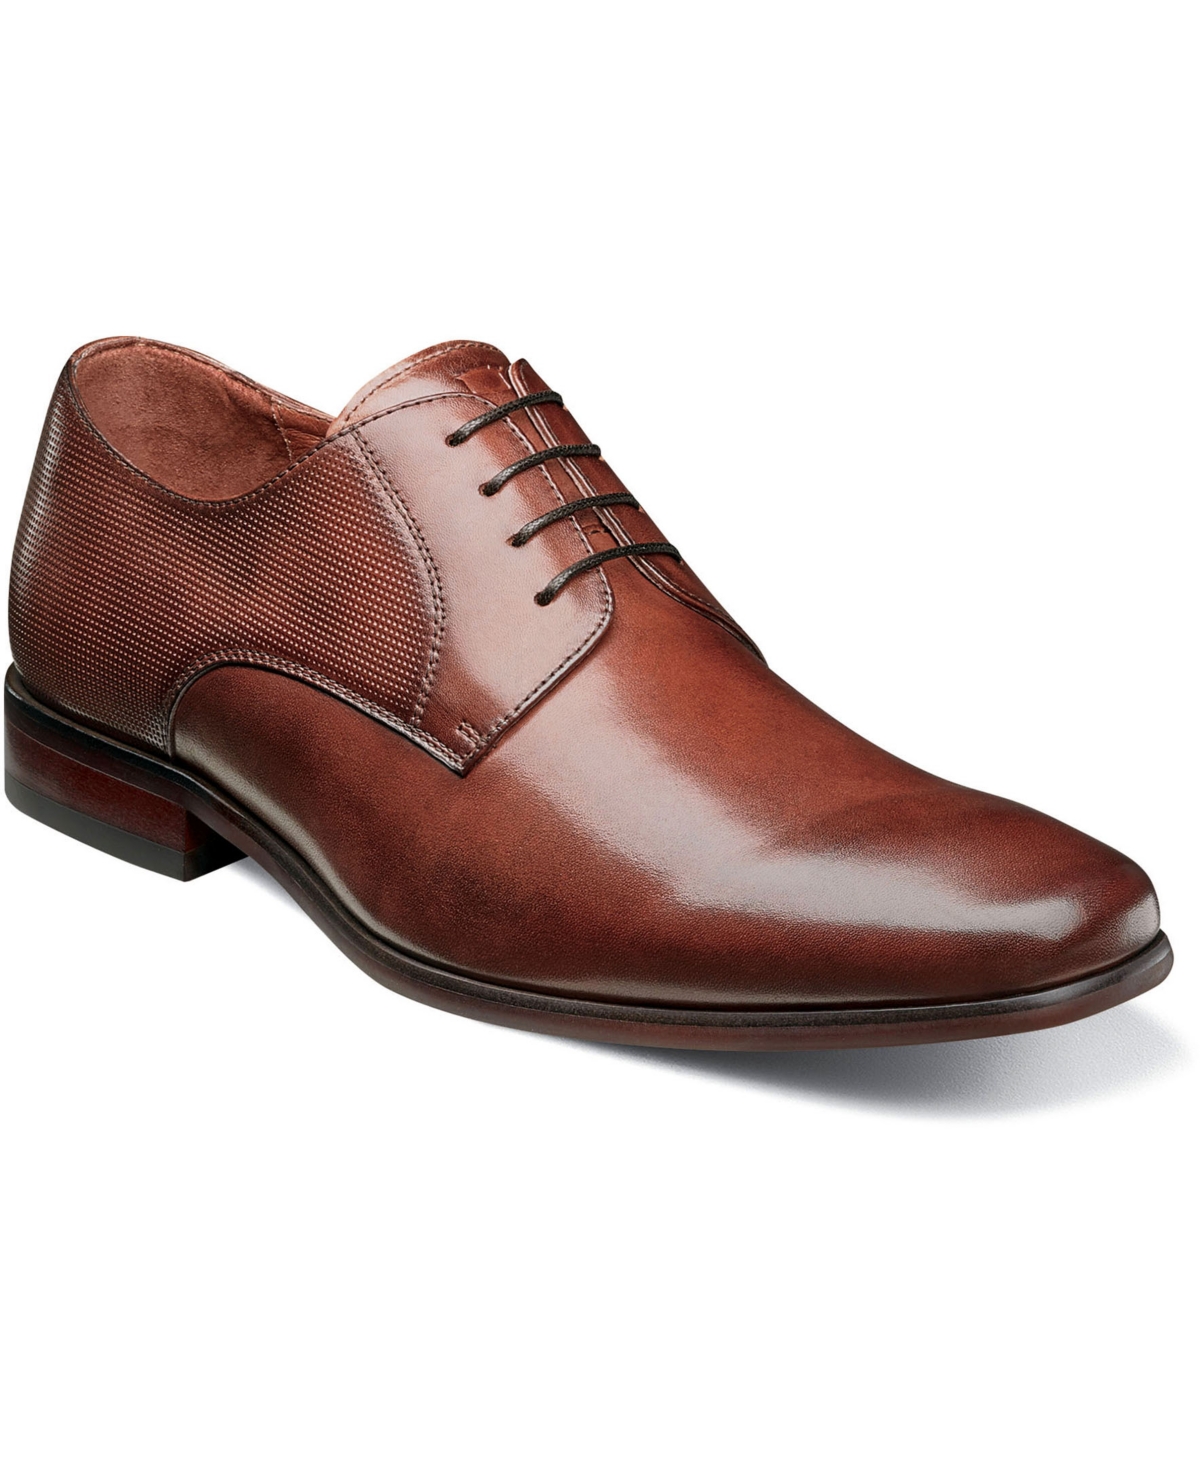 Florsheim Men's Kierland Plain Toe Oxford Shoes Men's Shoes